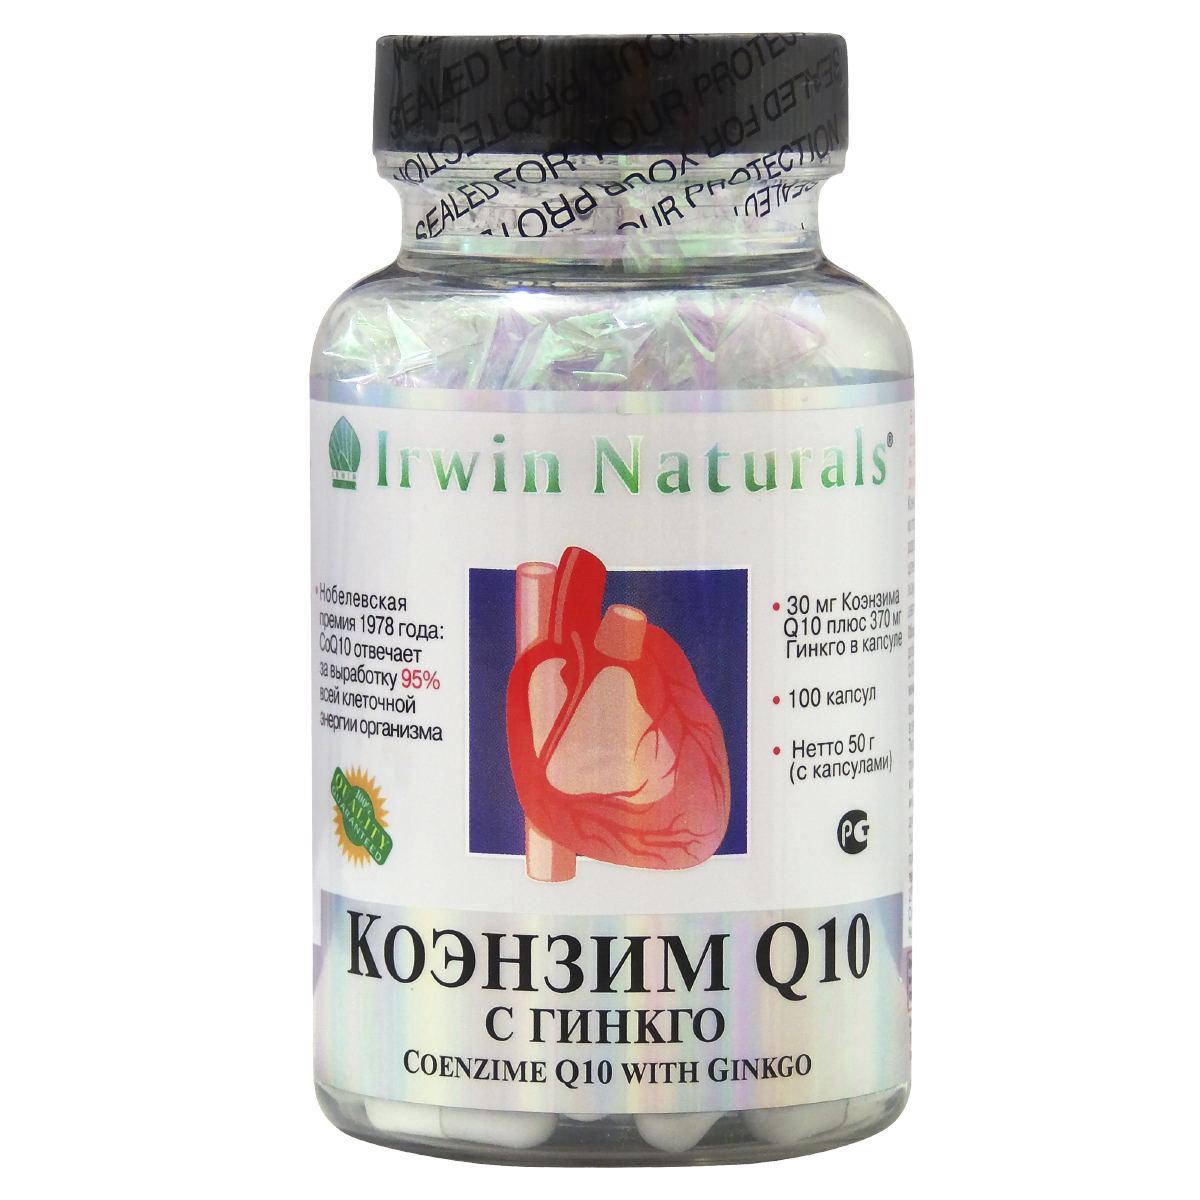 Коэнзим Q10 с Гинкго - Источник жизненной энергии для сердца, сосудов  и всего организма.